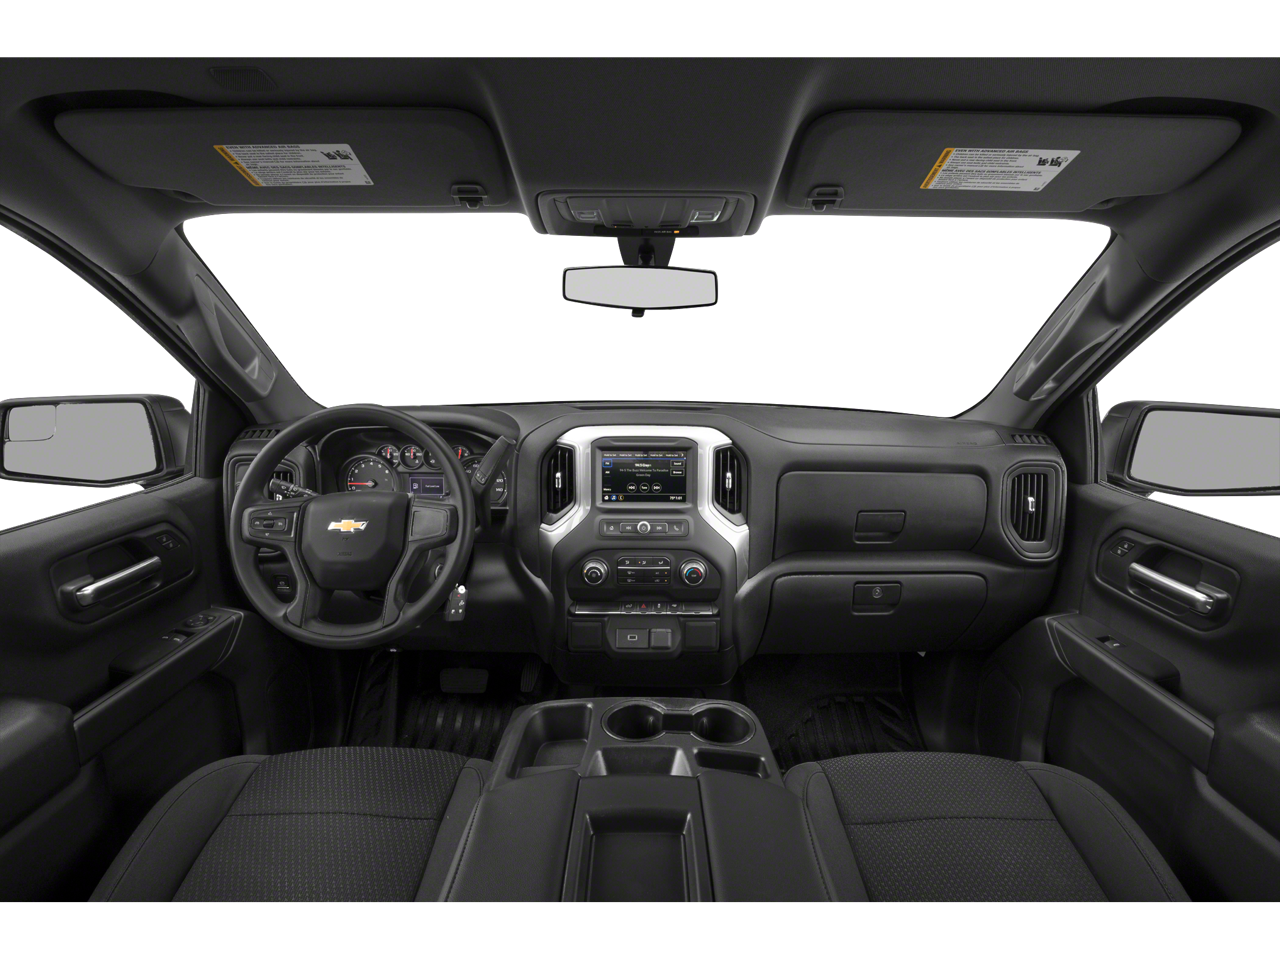 2020 Chevrolet Silverado 1500 WT 4WD Value Pkg + Tow